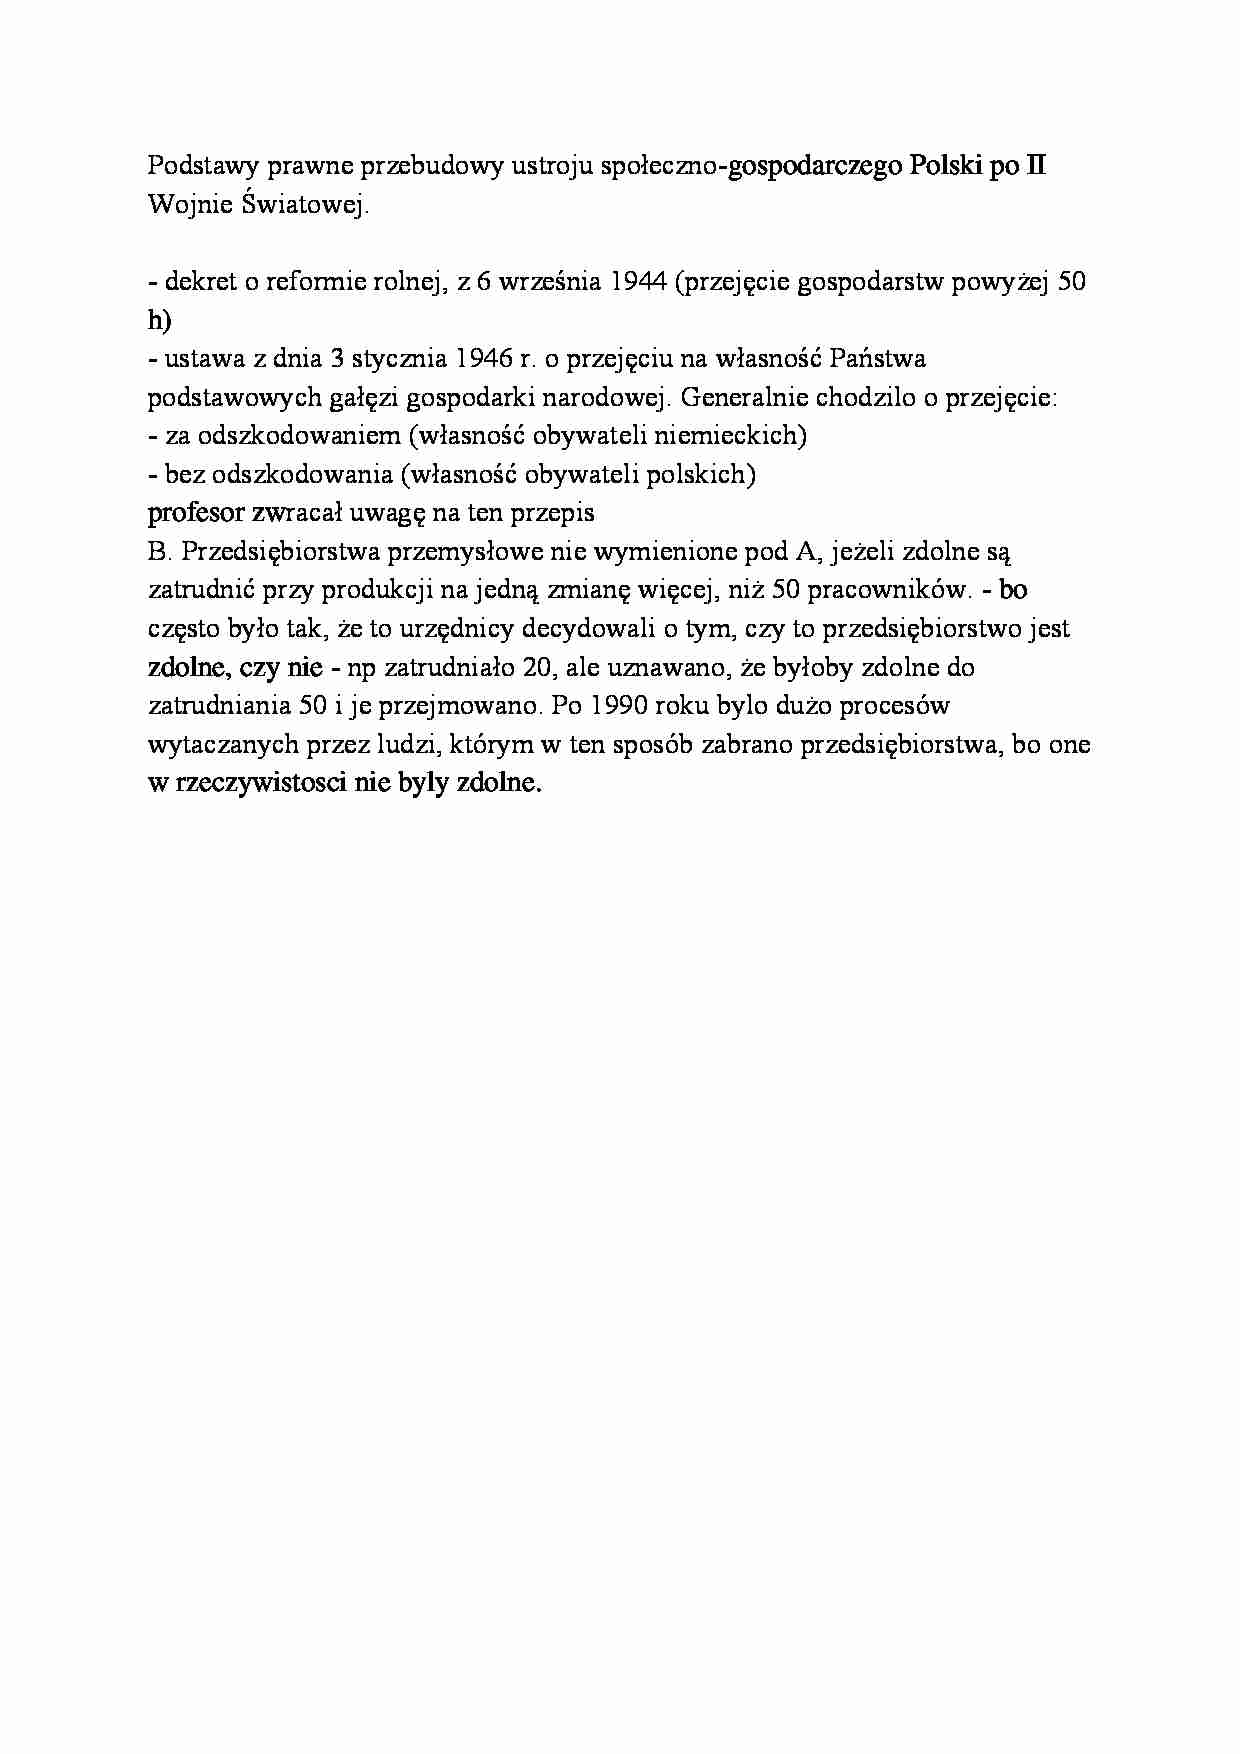 Podstawy prawne przebudowy ustroju społeczno-gospodarczego Polski po II Wojnie Światowej-opracowanie - strona 1